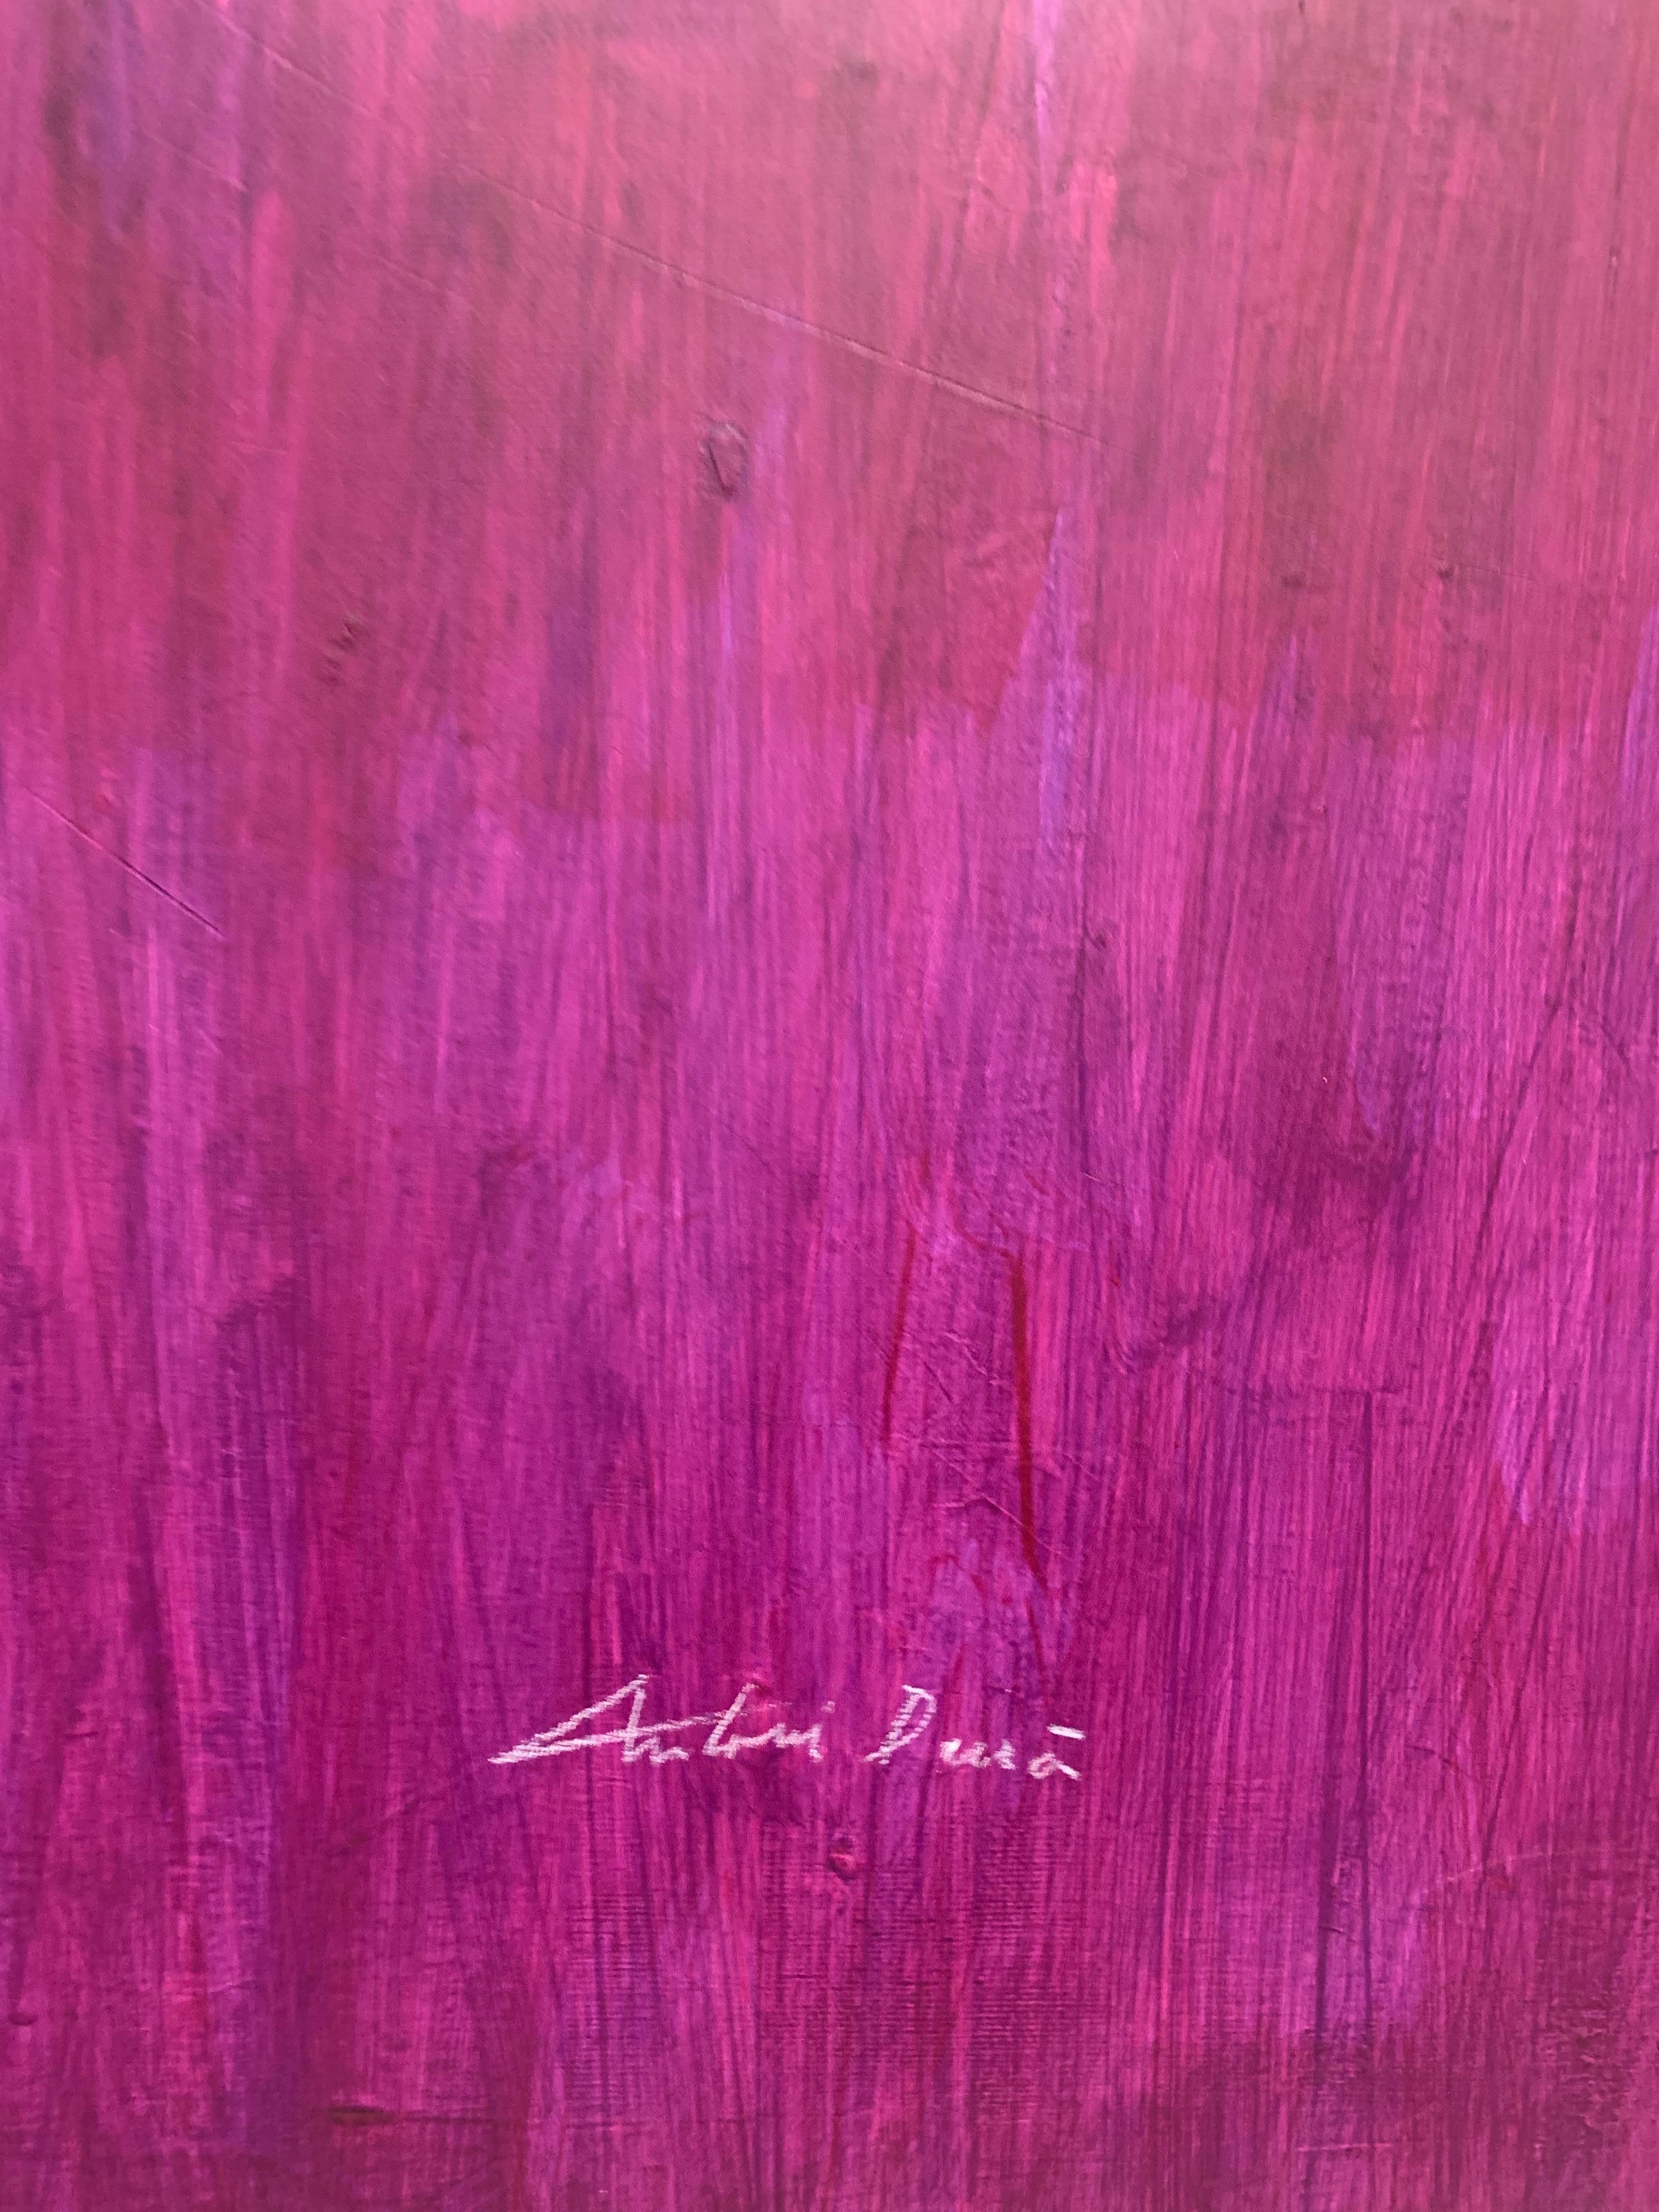 minwax purple stain